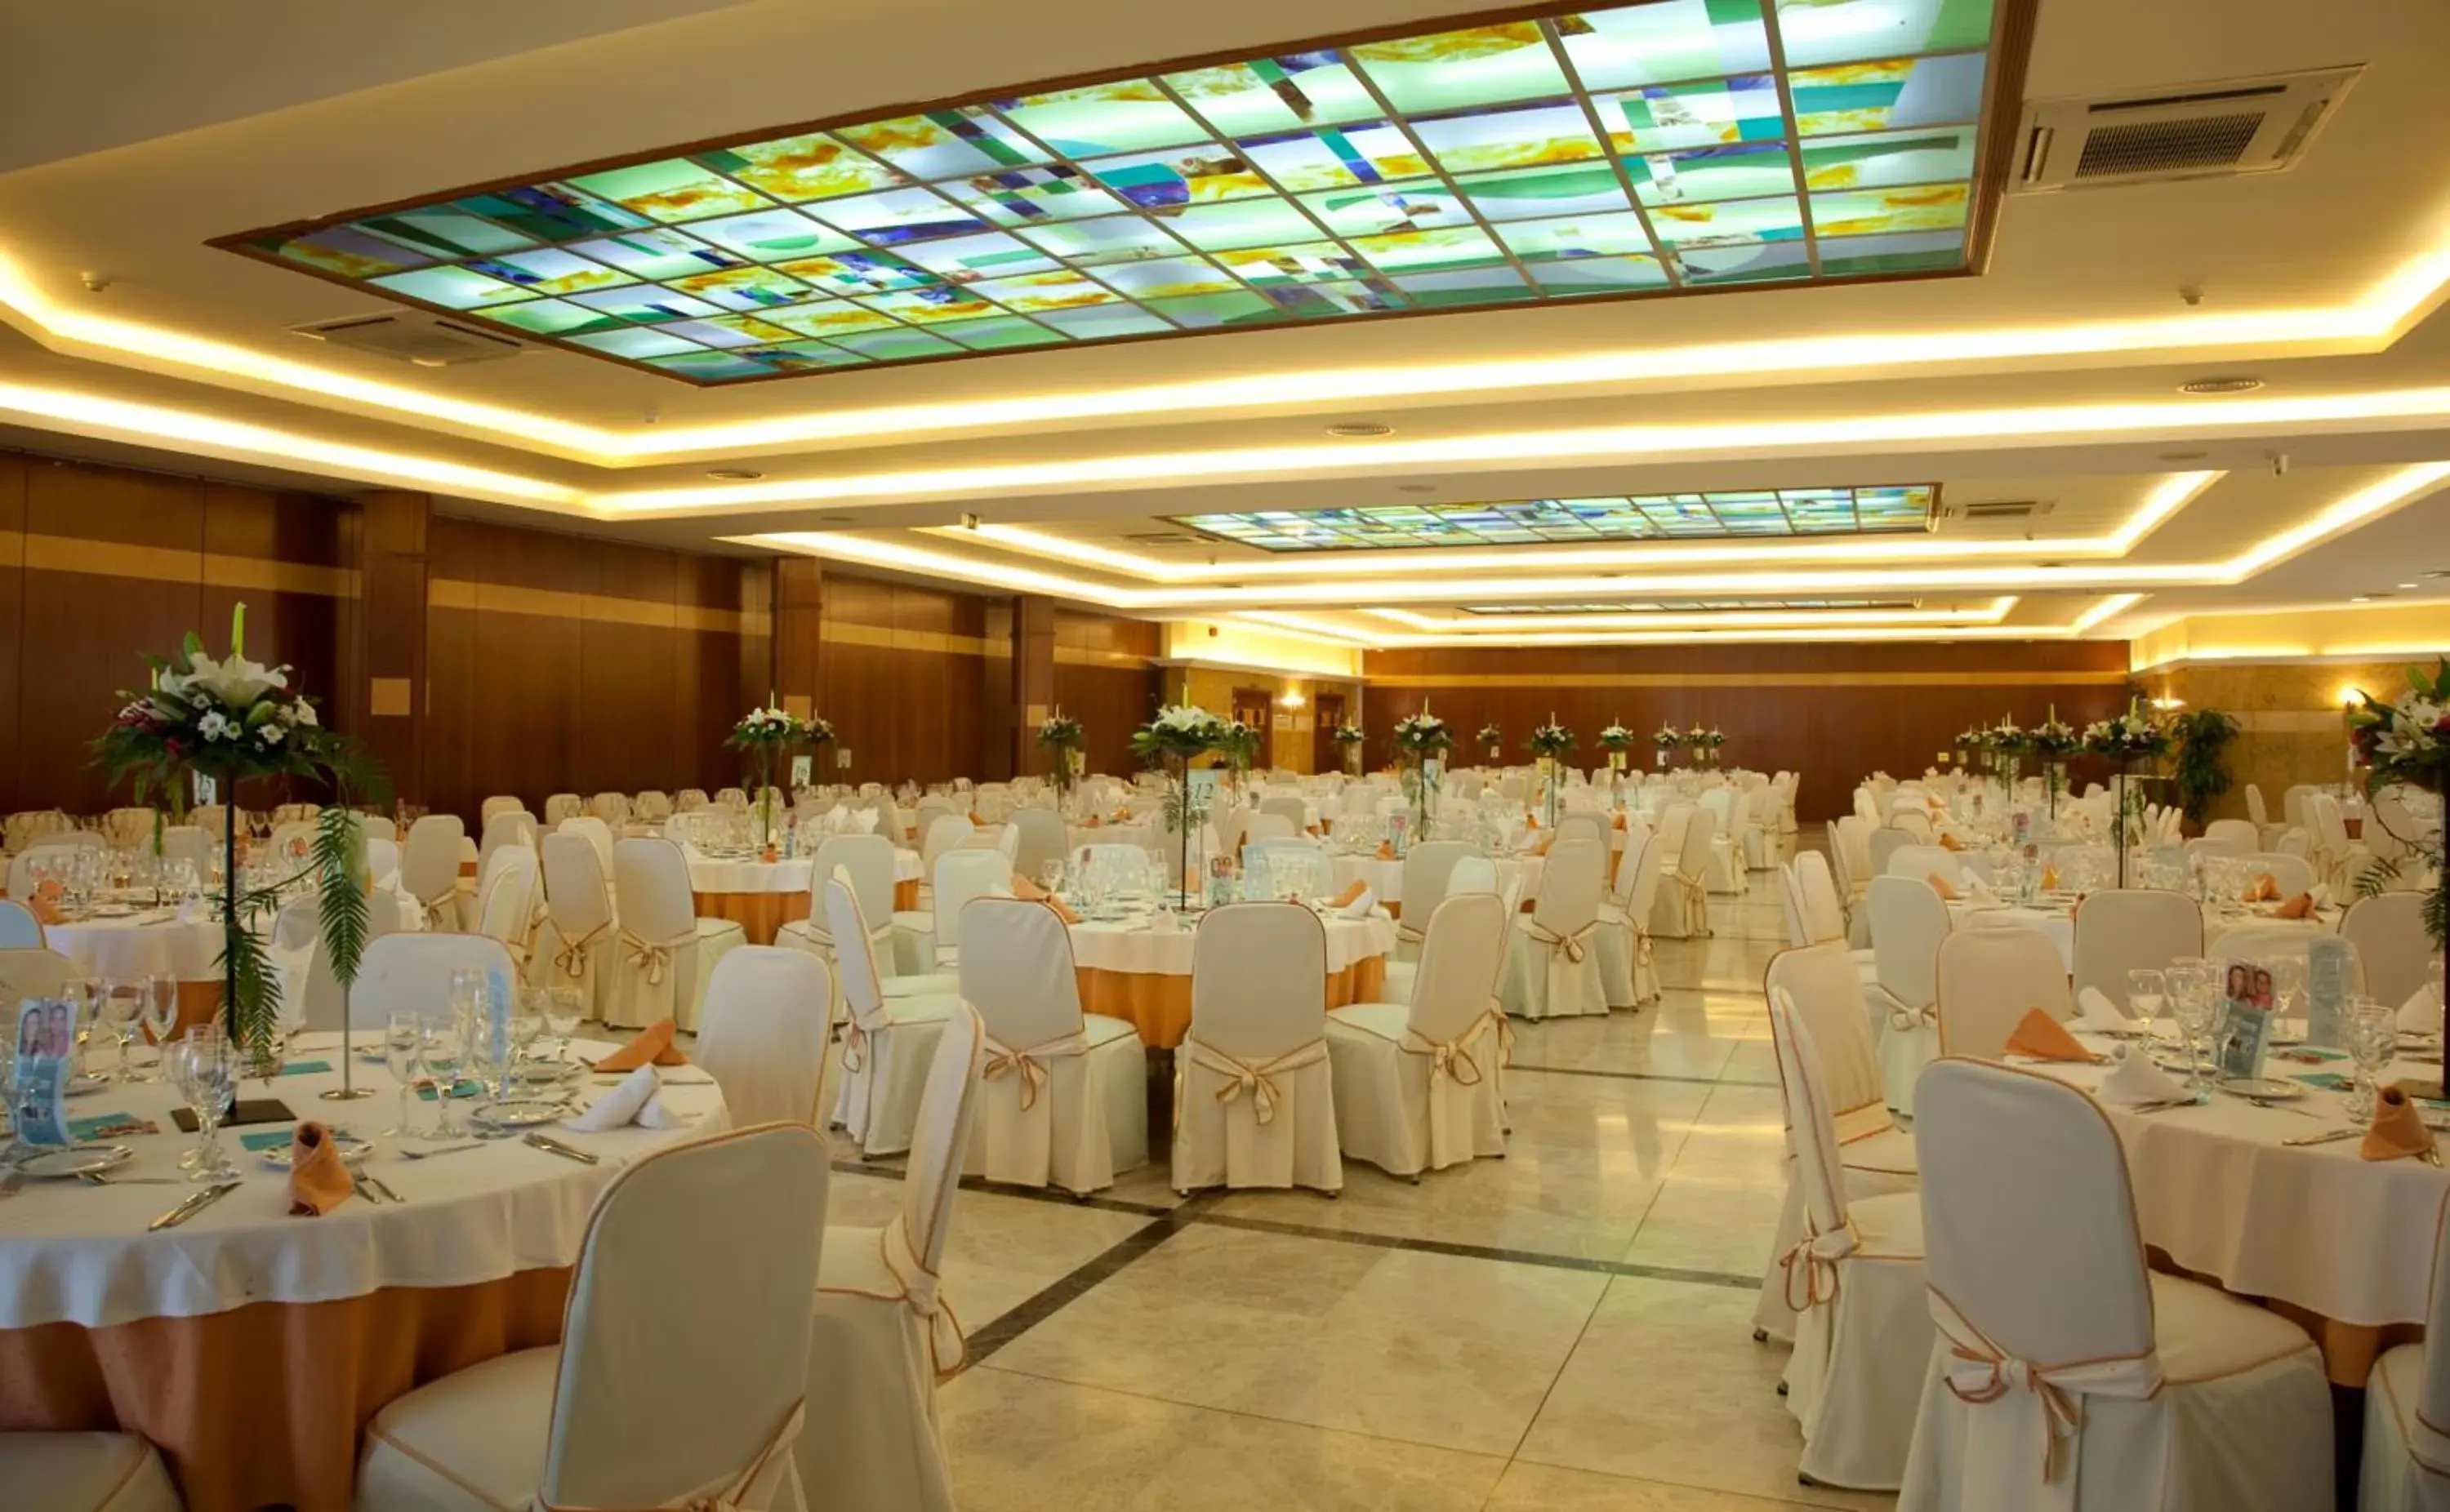 Banquet/Function facilities, Banquet Facilities in Ejido Hotel